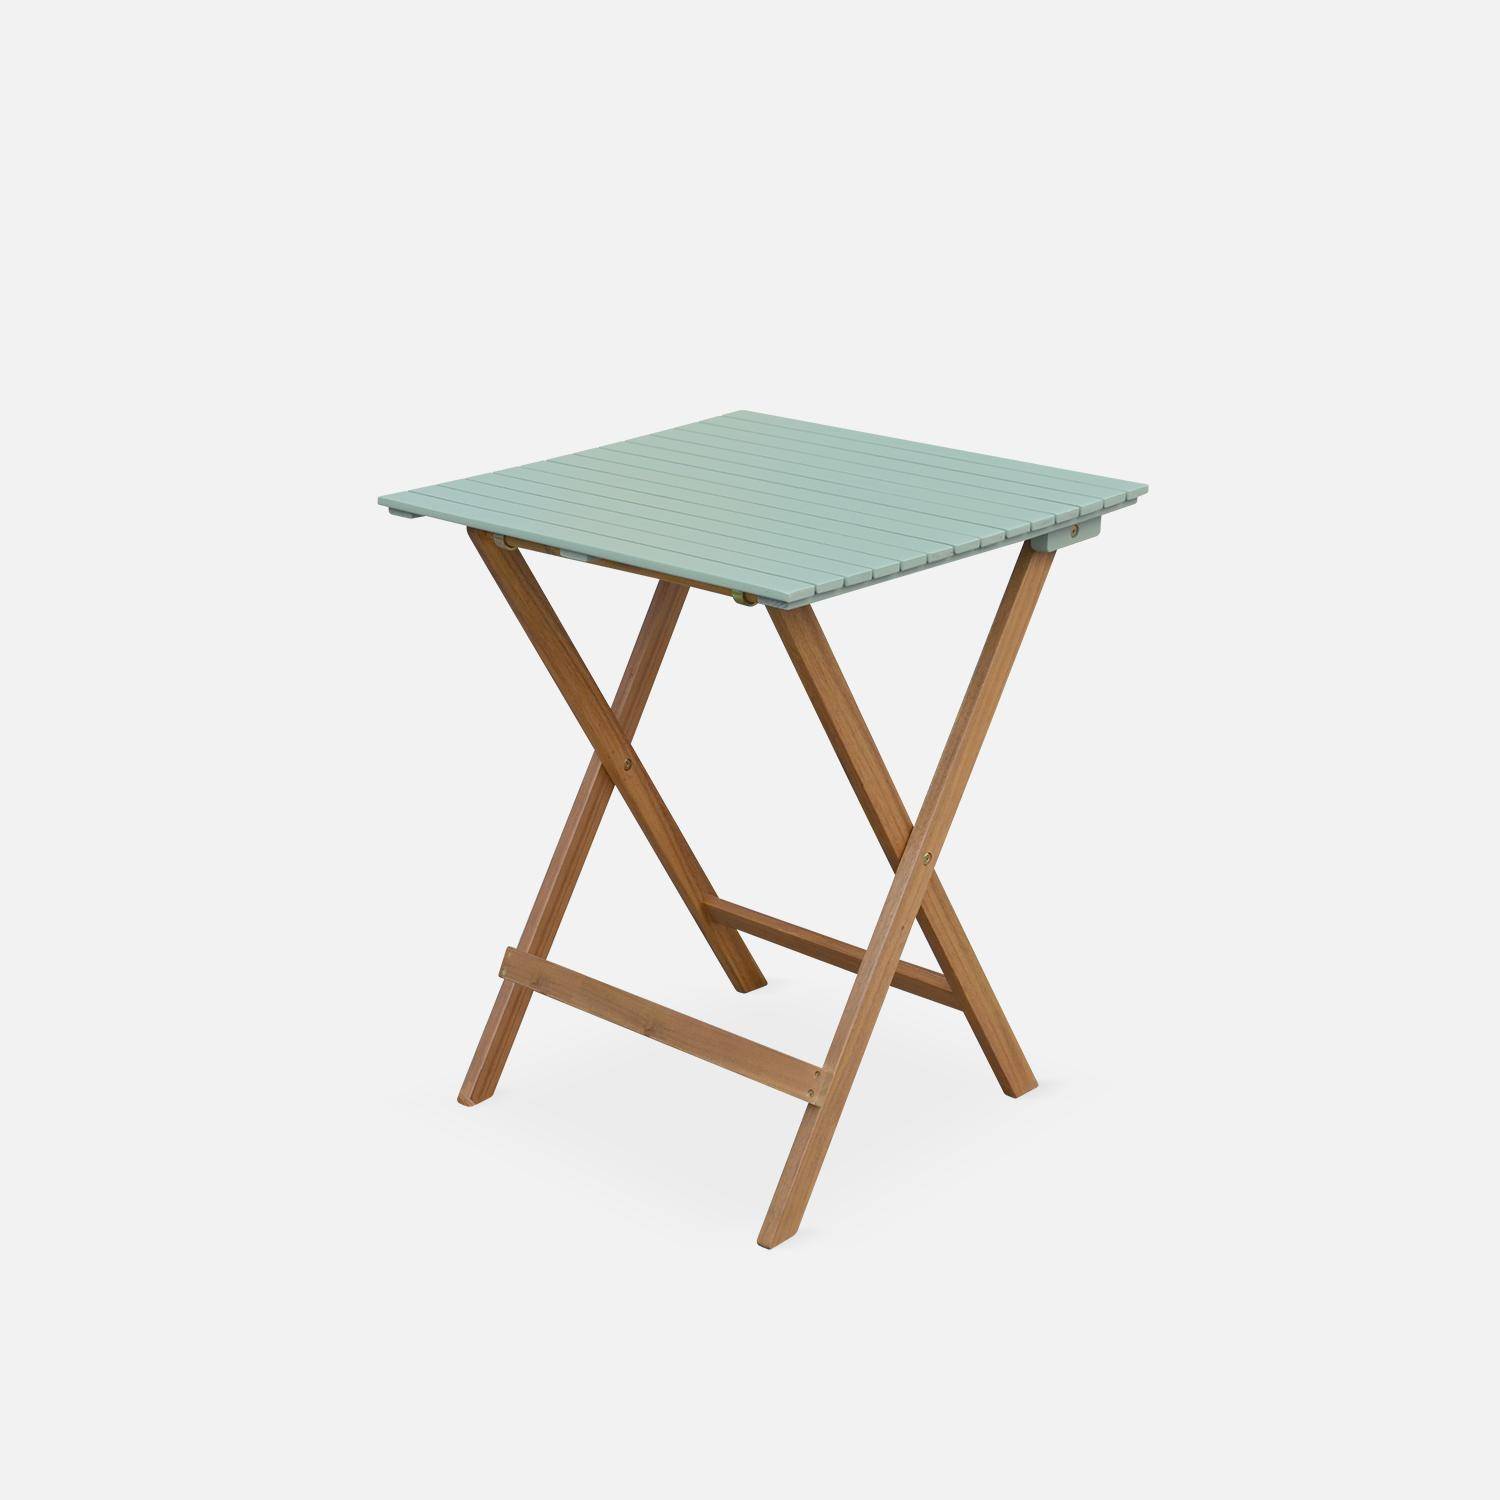 Conjunto de jardín de madera Bistro 60x60cm - Barcelona - verde grisáceo, mesa plegable bicolor con 2 sillas plegables, acacia Photo6